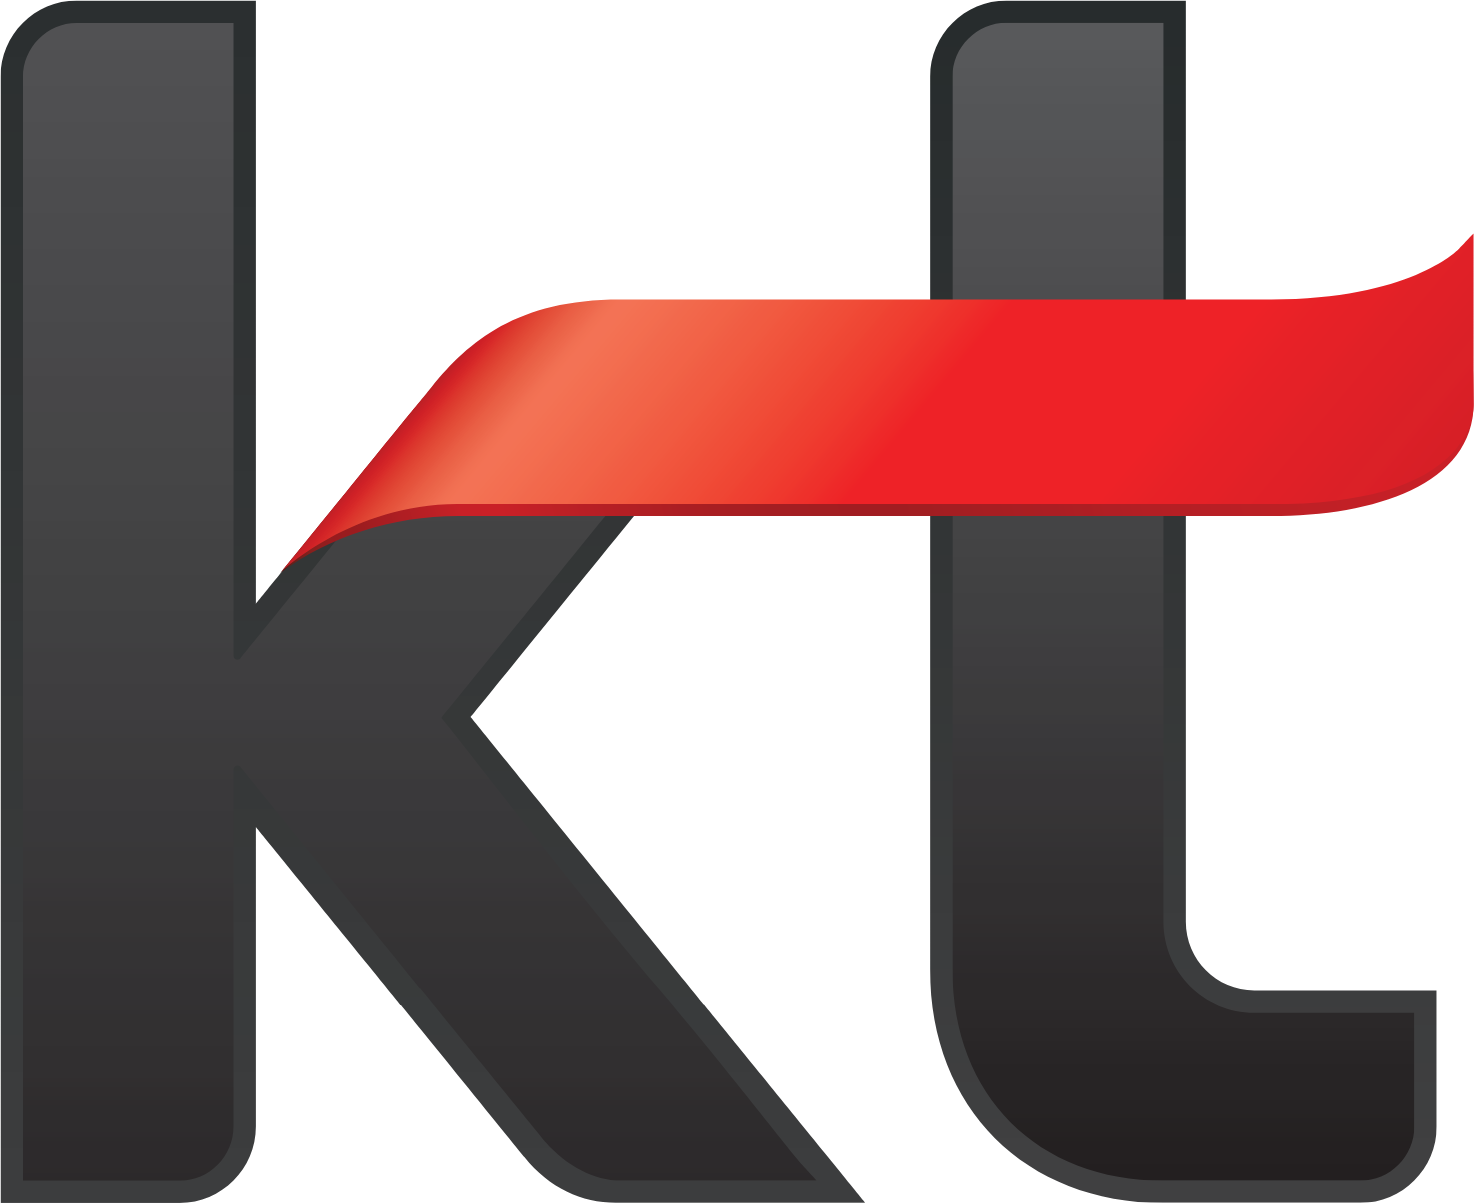 KT Corporation logo (PNG transparent)